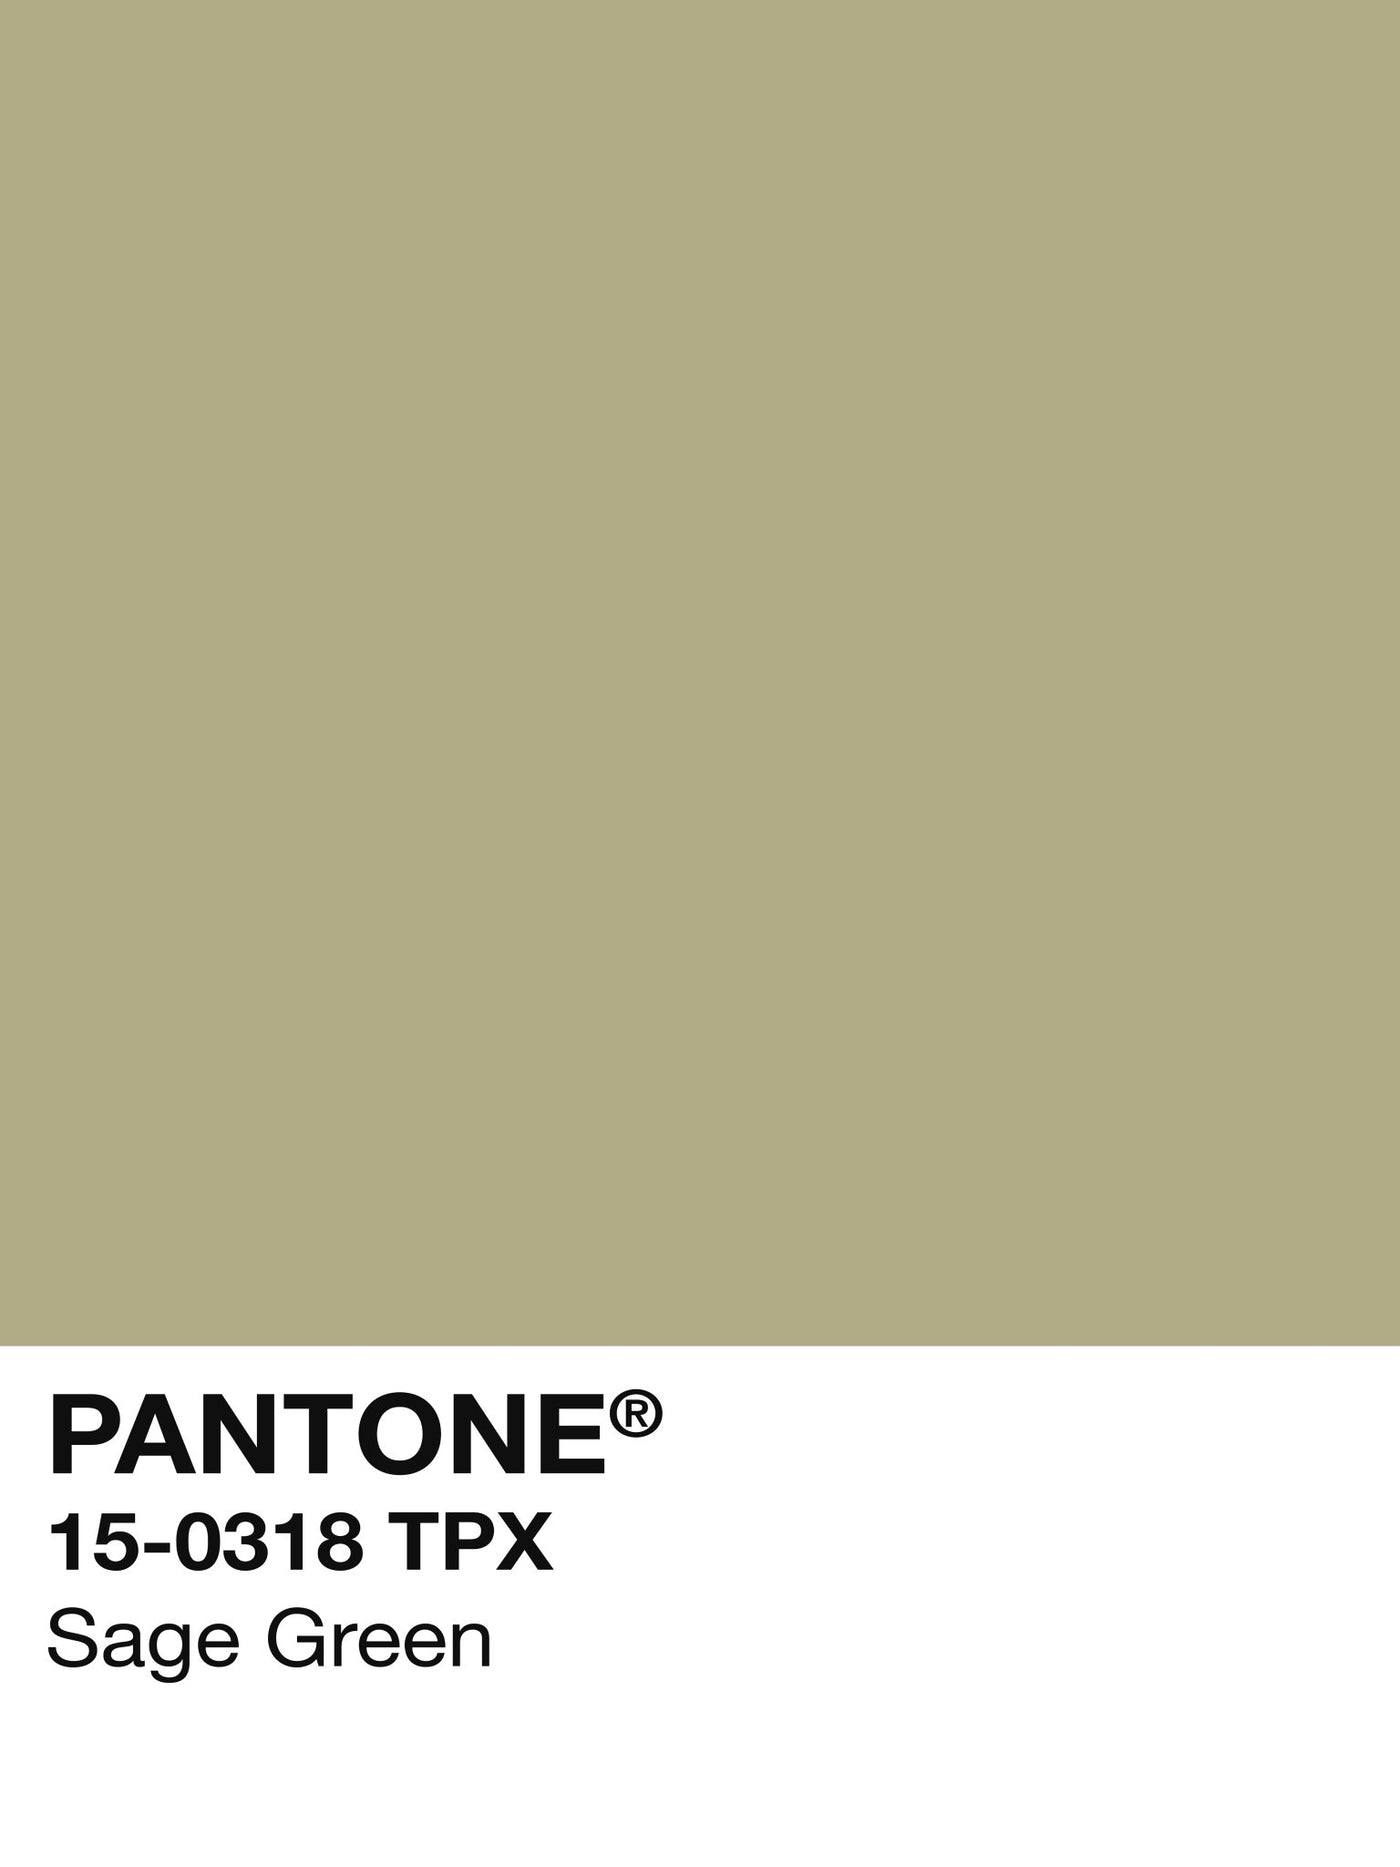 Pantone Sage Green